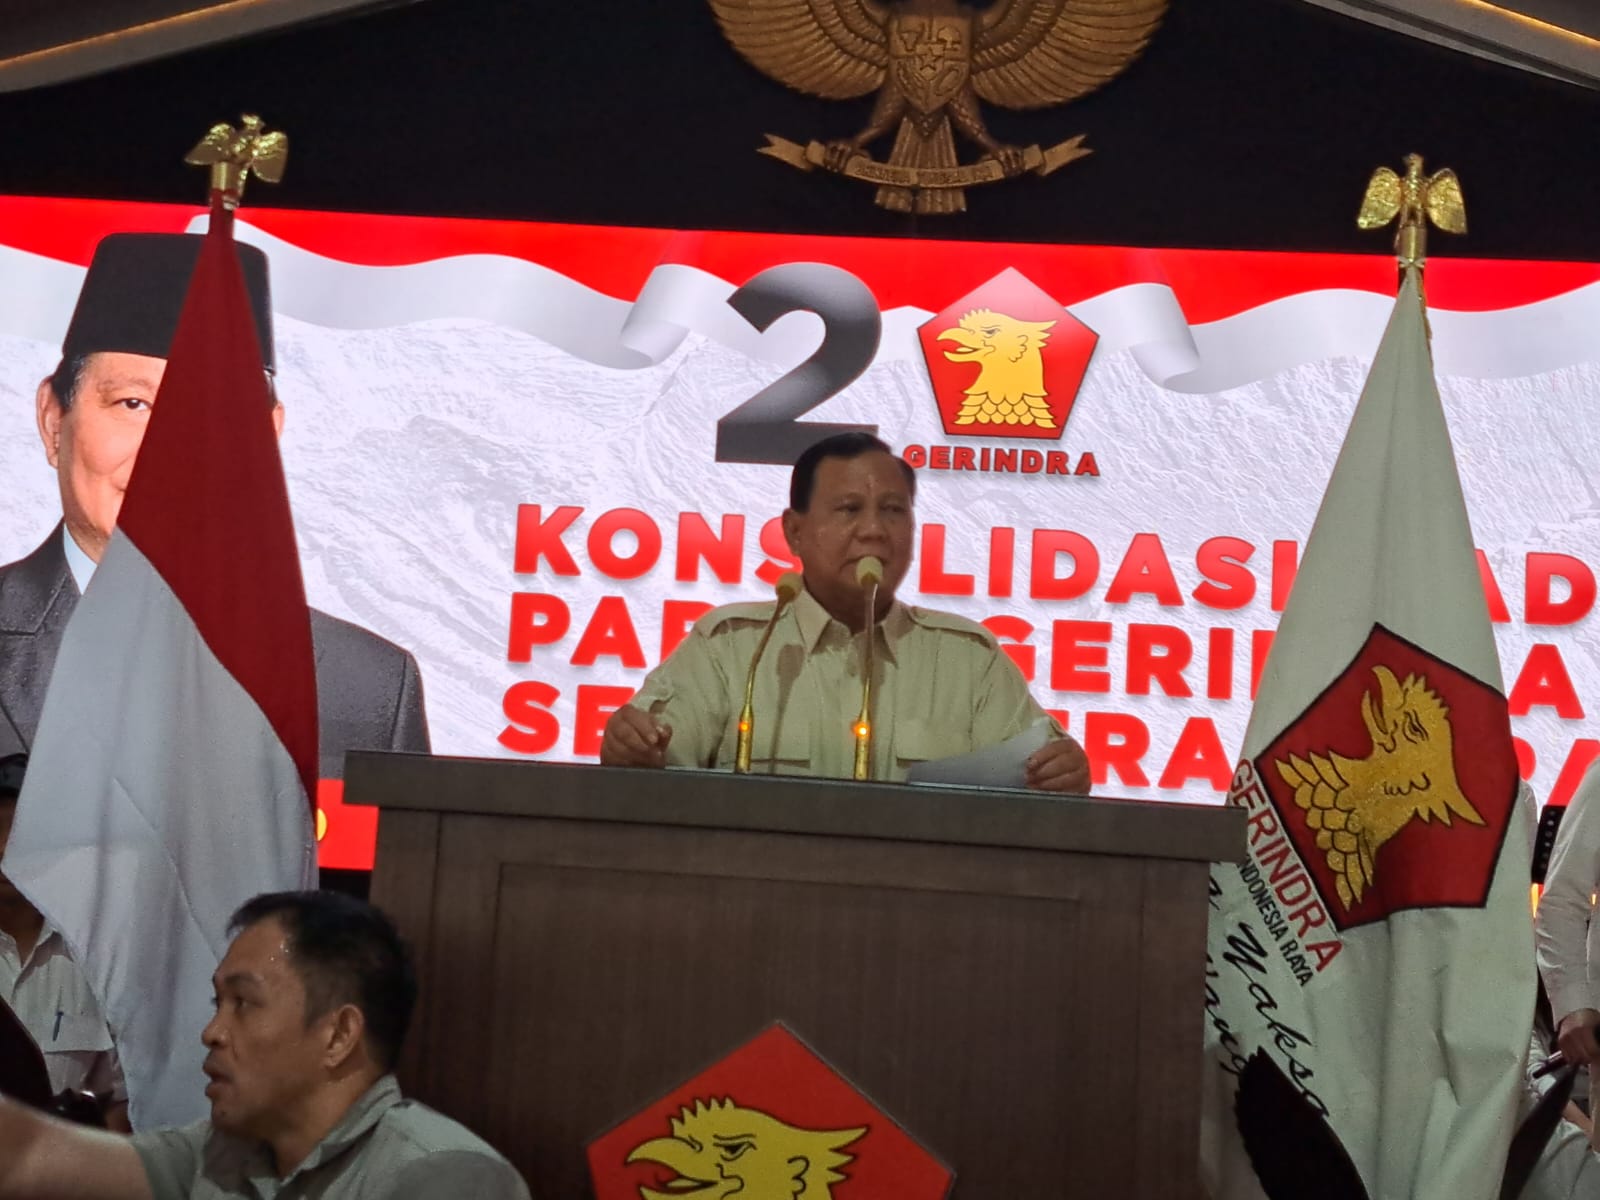 Pesan Prabowo kepada Kader Gerindra, Jangan Jelekkan Orang Lain